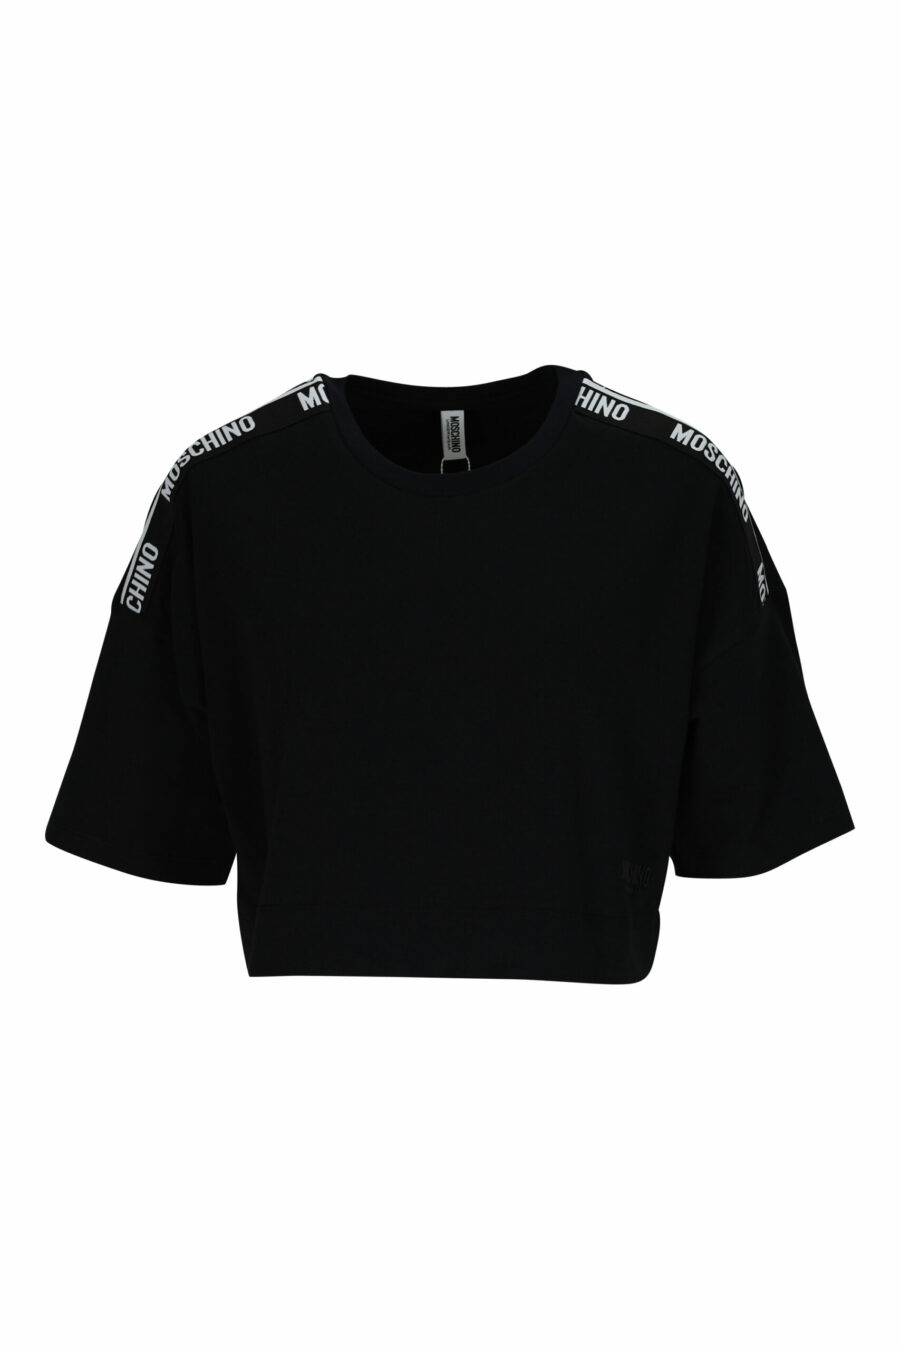 Schwarzes kurzes T-Shirt mit weißem Schulterband-Logo - 667113696454 skaliert